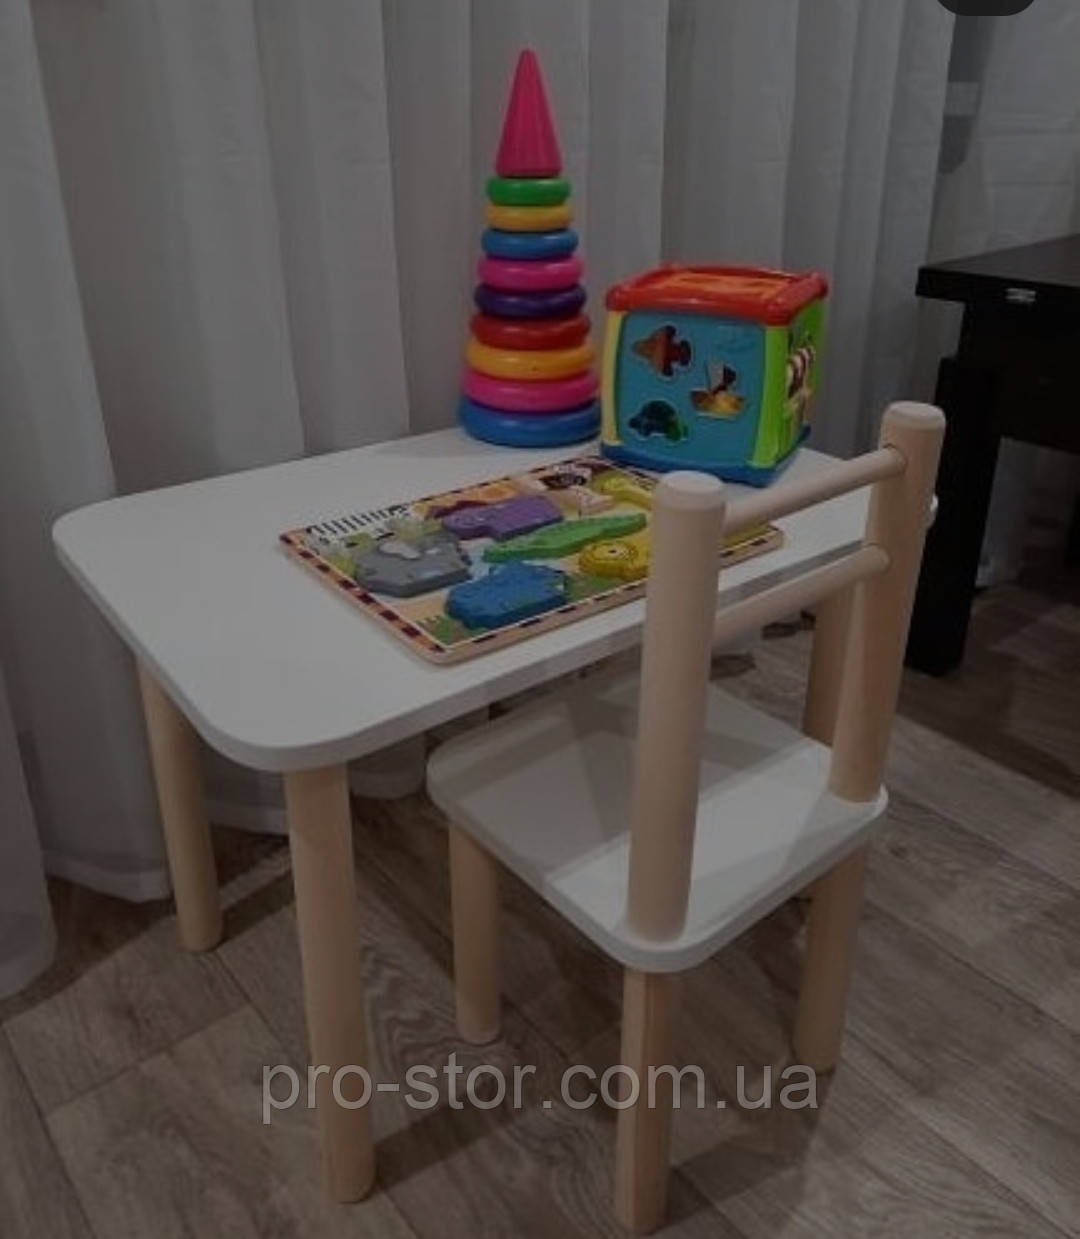 Дитячий столик і стільці від виробника дерева і ЛДСП Стол і стільців для дітей Білий